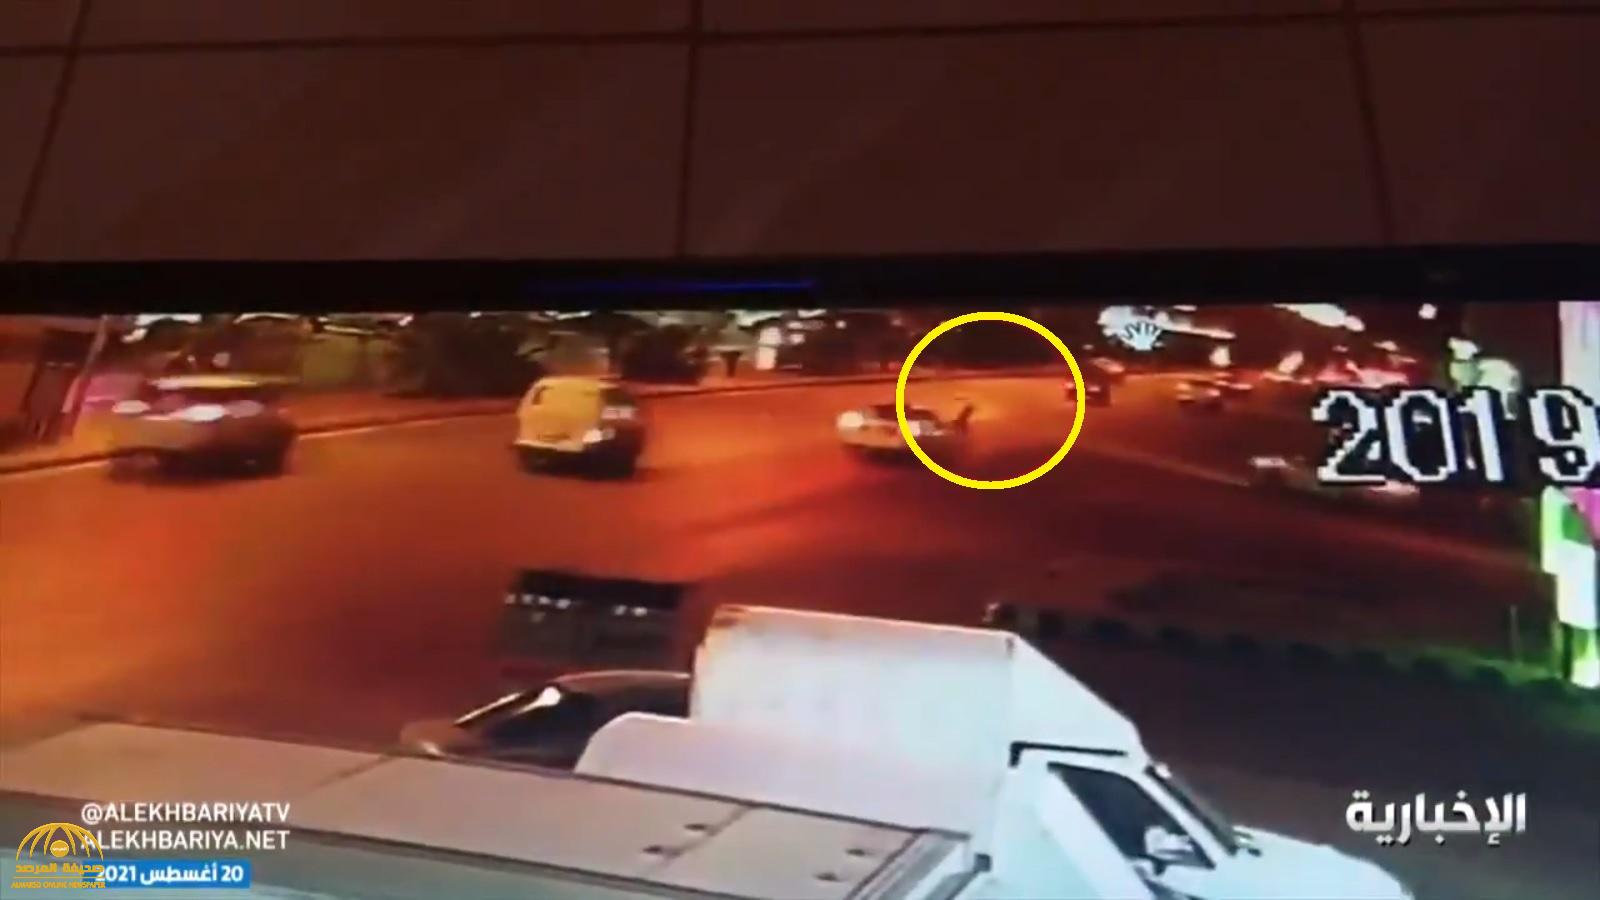 شاهد: "شارع الموت" في الرياض.. حادث دهس يومياً وتجمهرات لممارسة التفحيط دون توفر سبل سلامة للمشاة